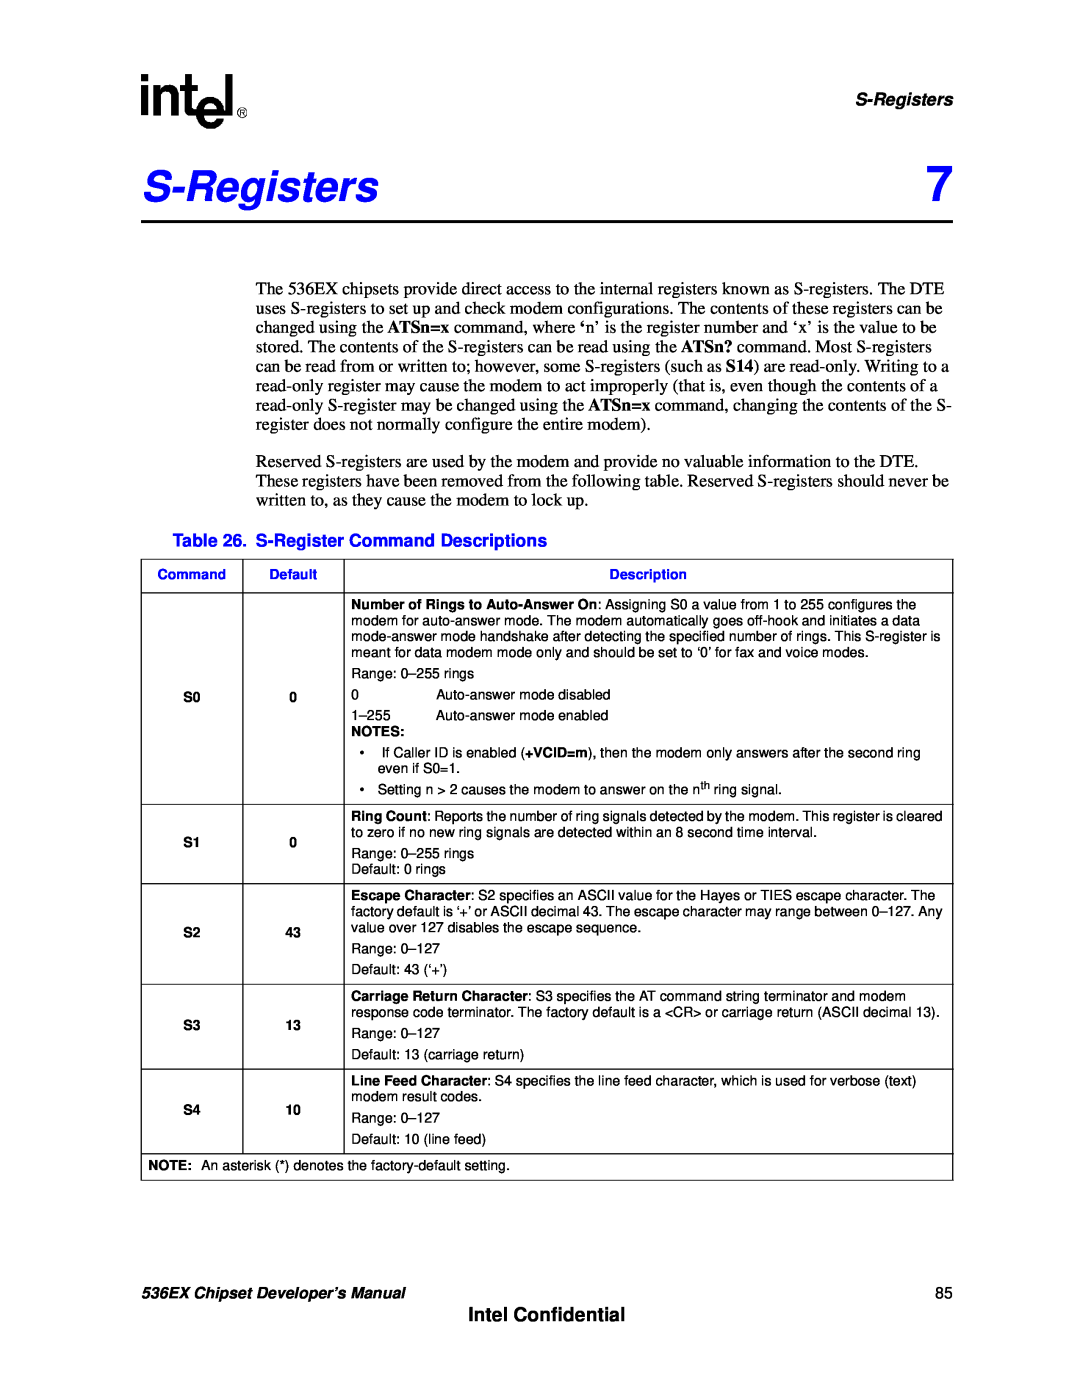 Intel 536EX manual S-Registers, Intel Confidential, S-RegisterCommand Descriptions 